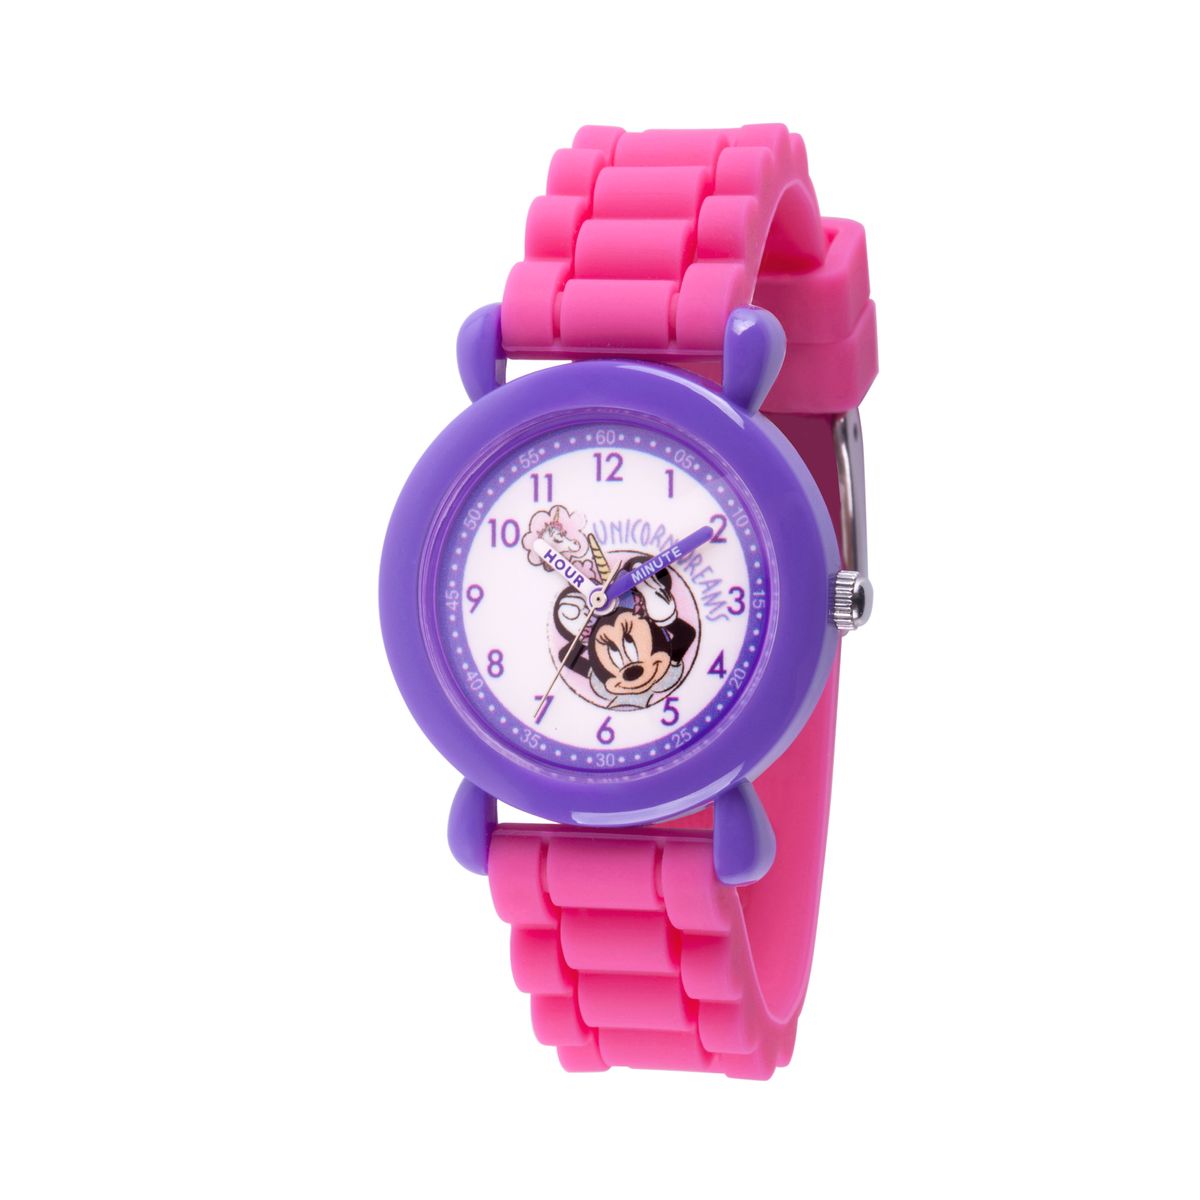 楽天Walmart 楽天市場店[送料無料] Disney Minnie Mouse Girls' Purple Plastic Watch, 1-Pack [楽天海外通販] | Disney Minnie Mouse Girls' Purple Plastic Watch, 1-Pack